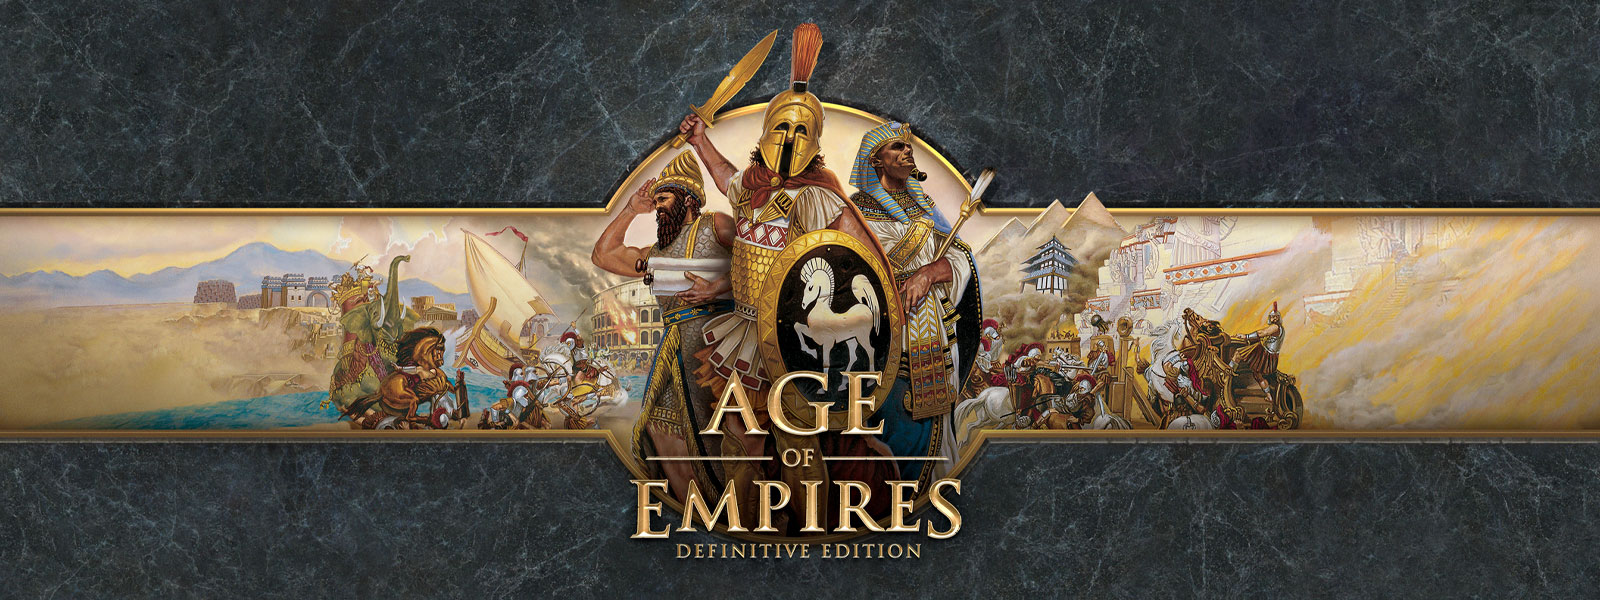 戦争の指導者とその軍隊をフィーチャーした、灰色のスレートの背景に Age of Empires: Definitive Edition ロゴ